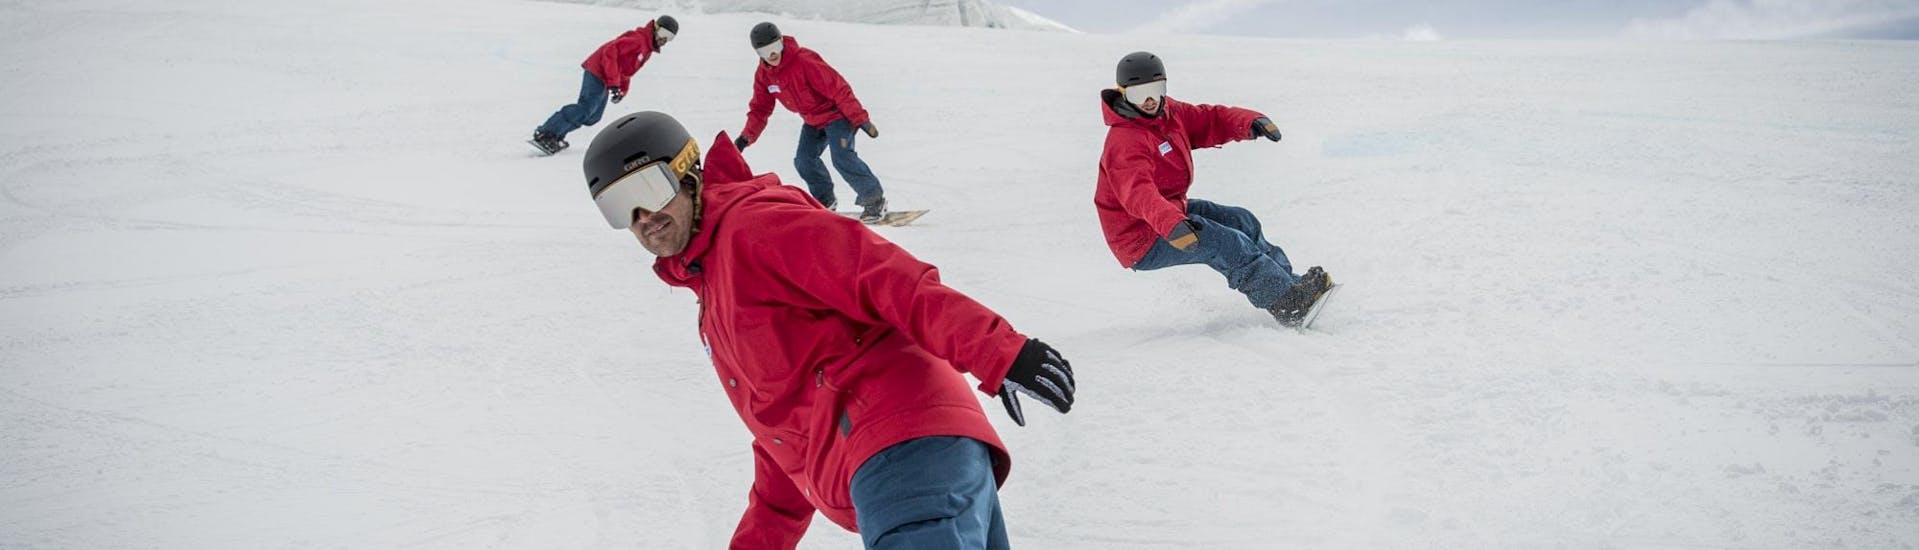 Clases de snowboard a partir de 16 años con experiencia.